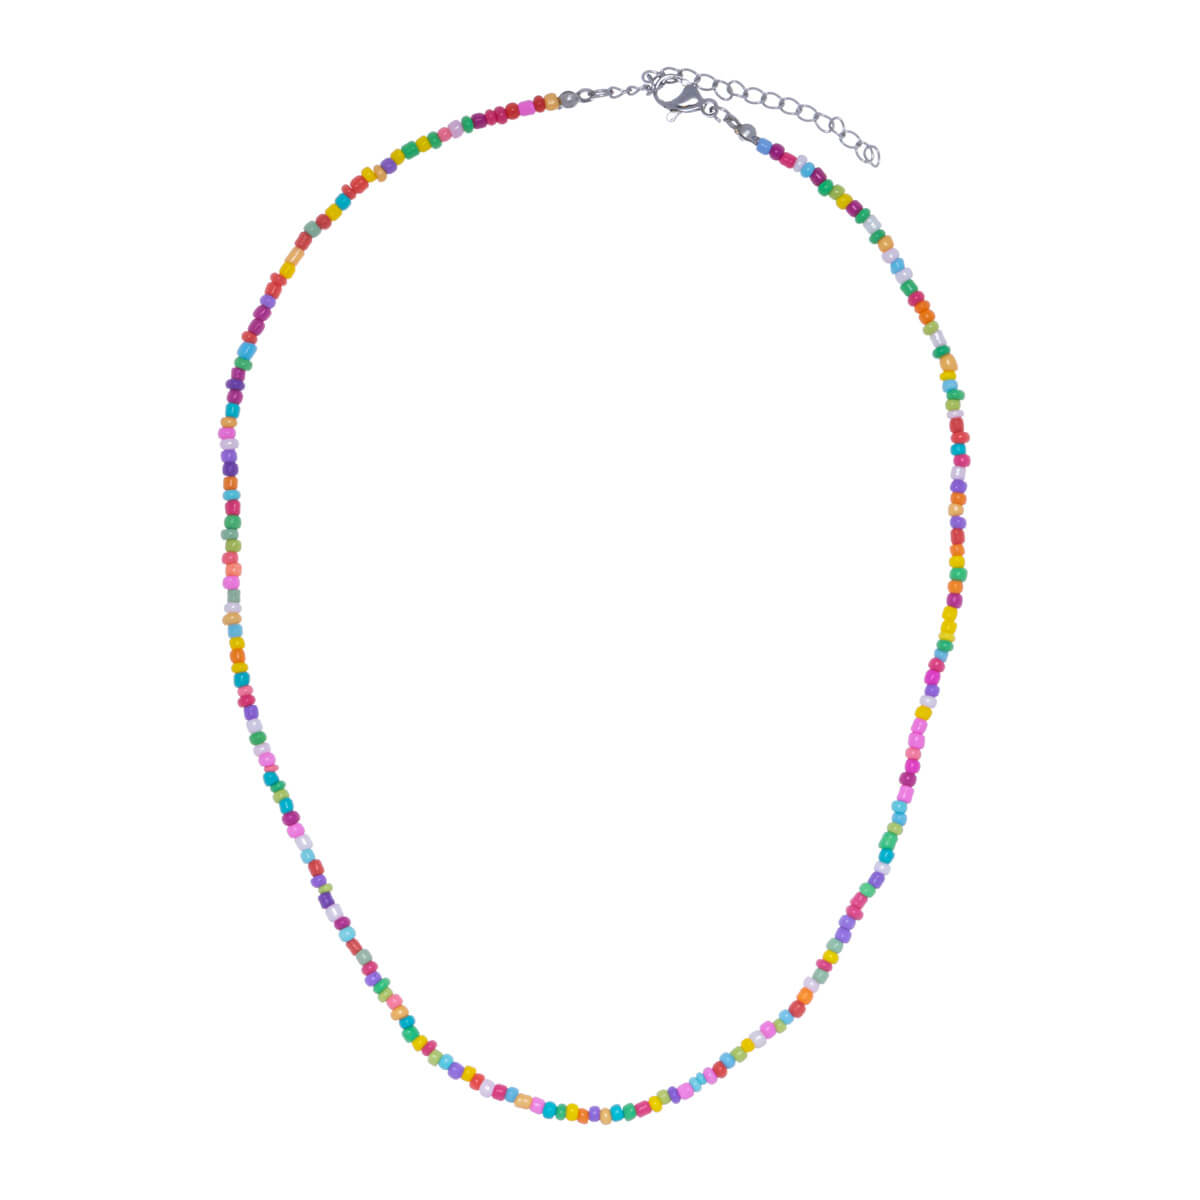 Multicolored neckline necklace 38cm +5cm